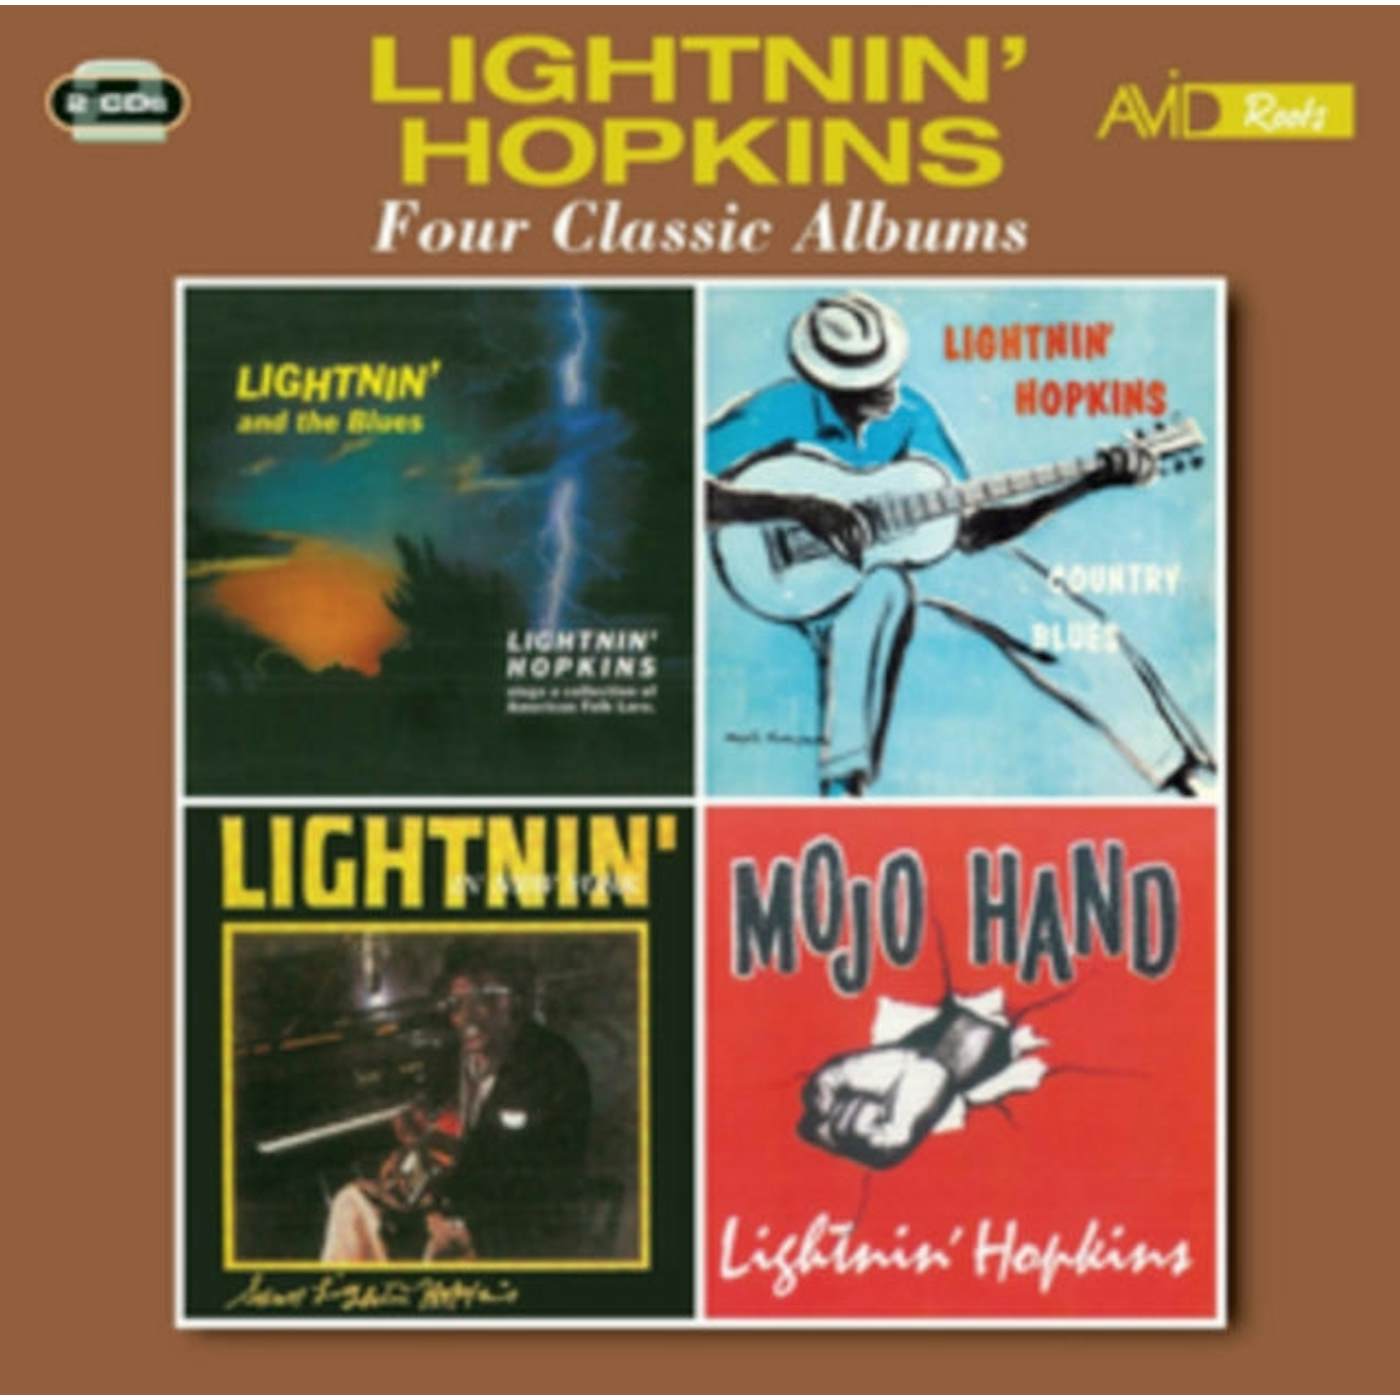 Lightnin' Hopkins CD - Four Classic Albums